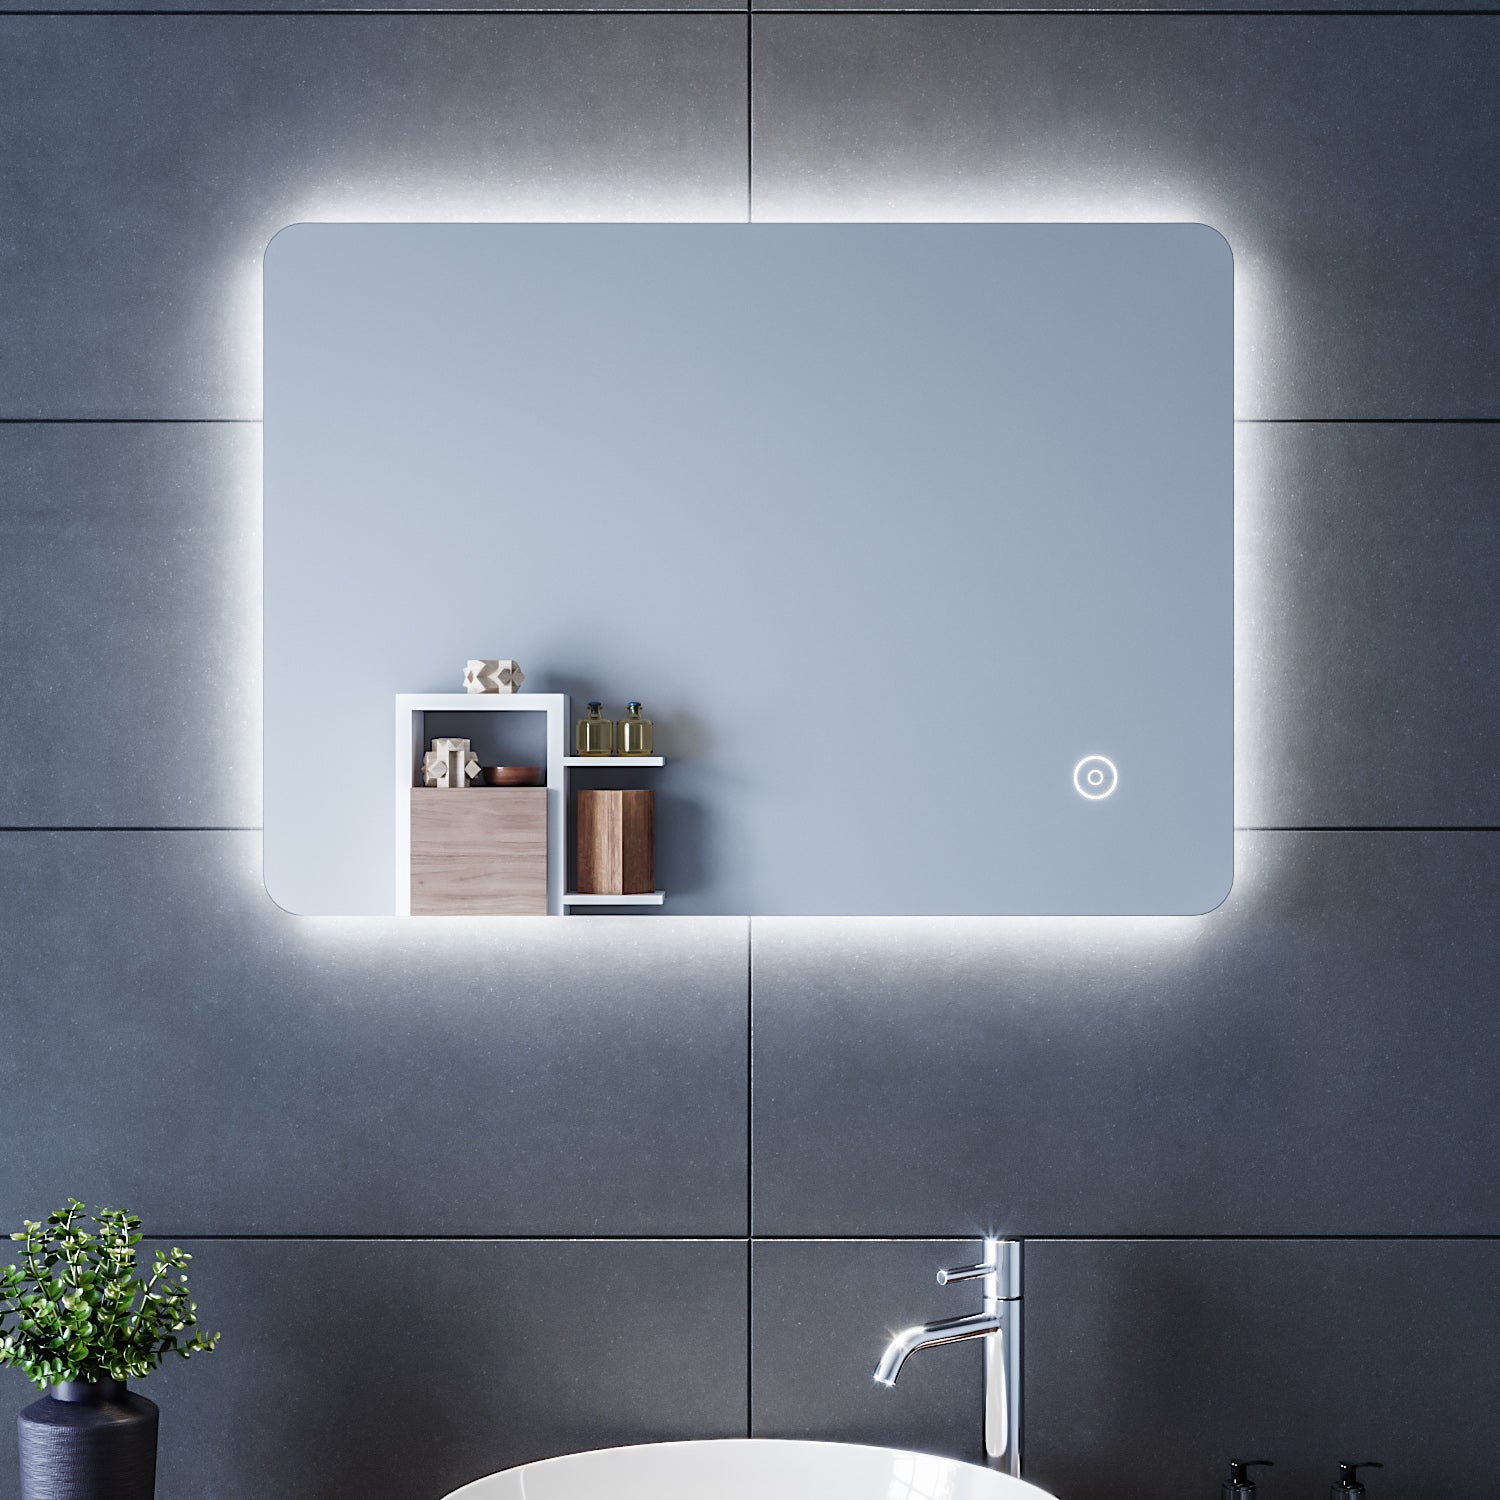 Miroir de voyage rechargeable Fesio avec Siècle des Lumières 60 LED -  Pliable - Miroir